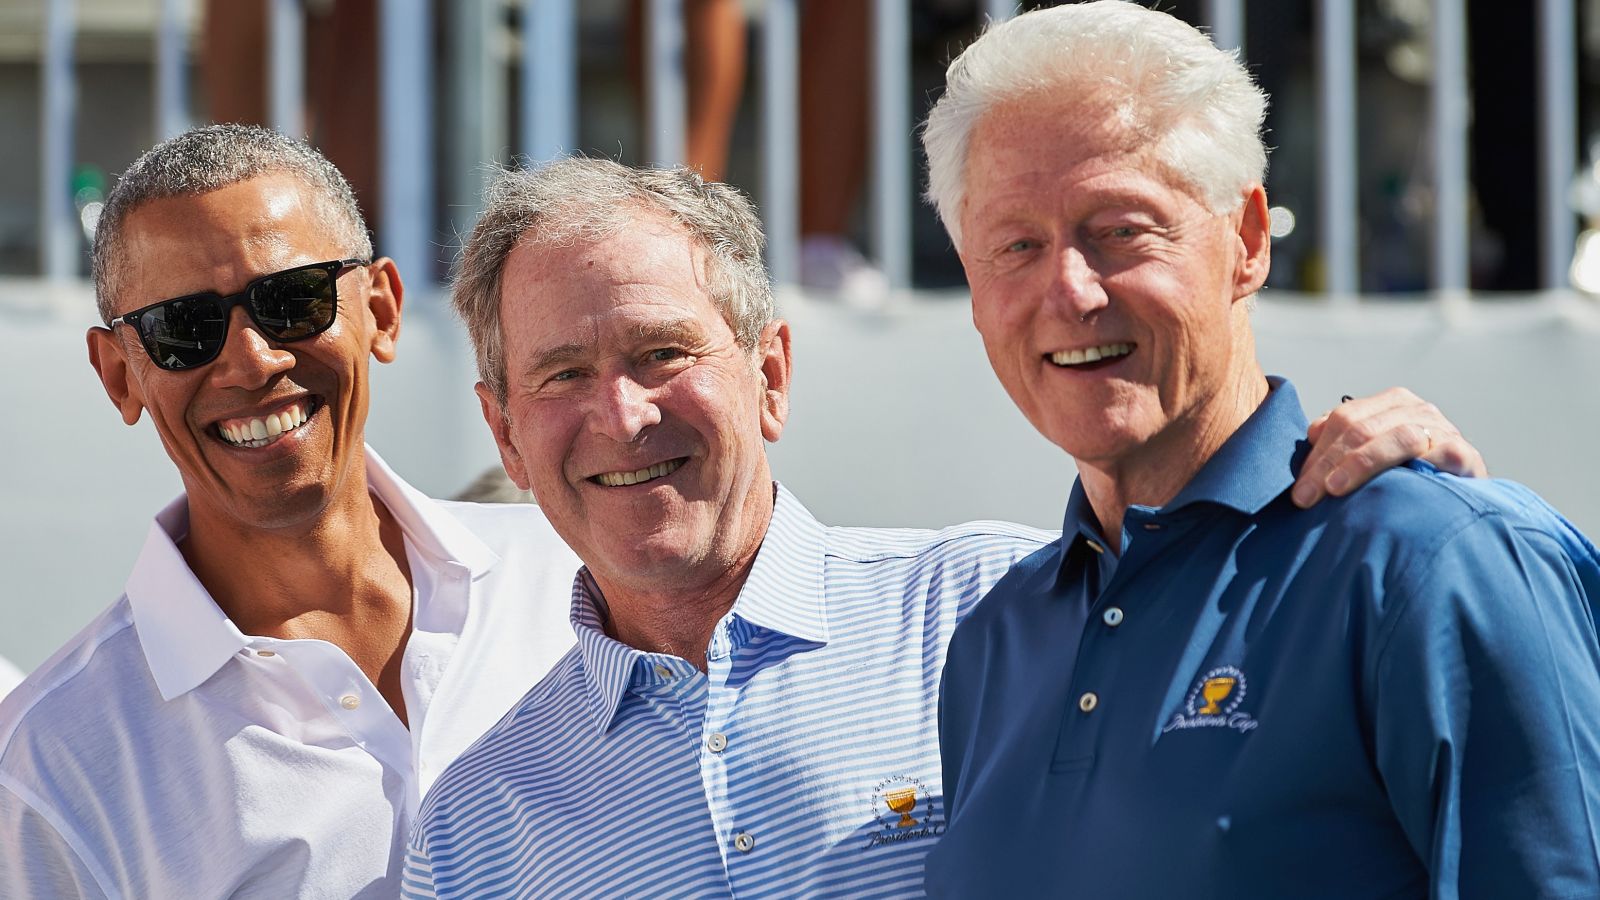 Gleich drei Ex-US-Präsidenten auf dem Golfplatz: Barack Obama, George W. Bush und Bill Clinton. © Shelley Lipton/Getty Images